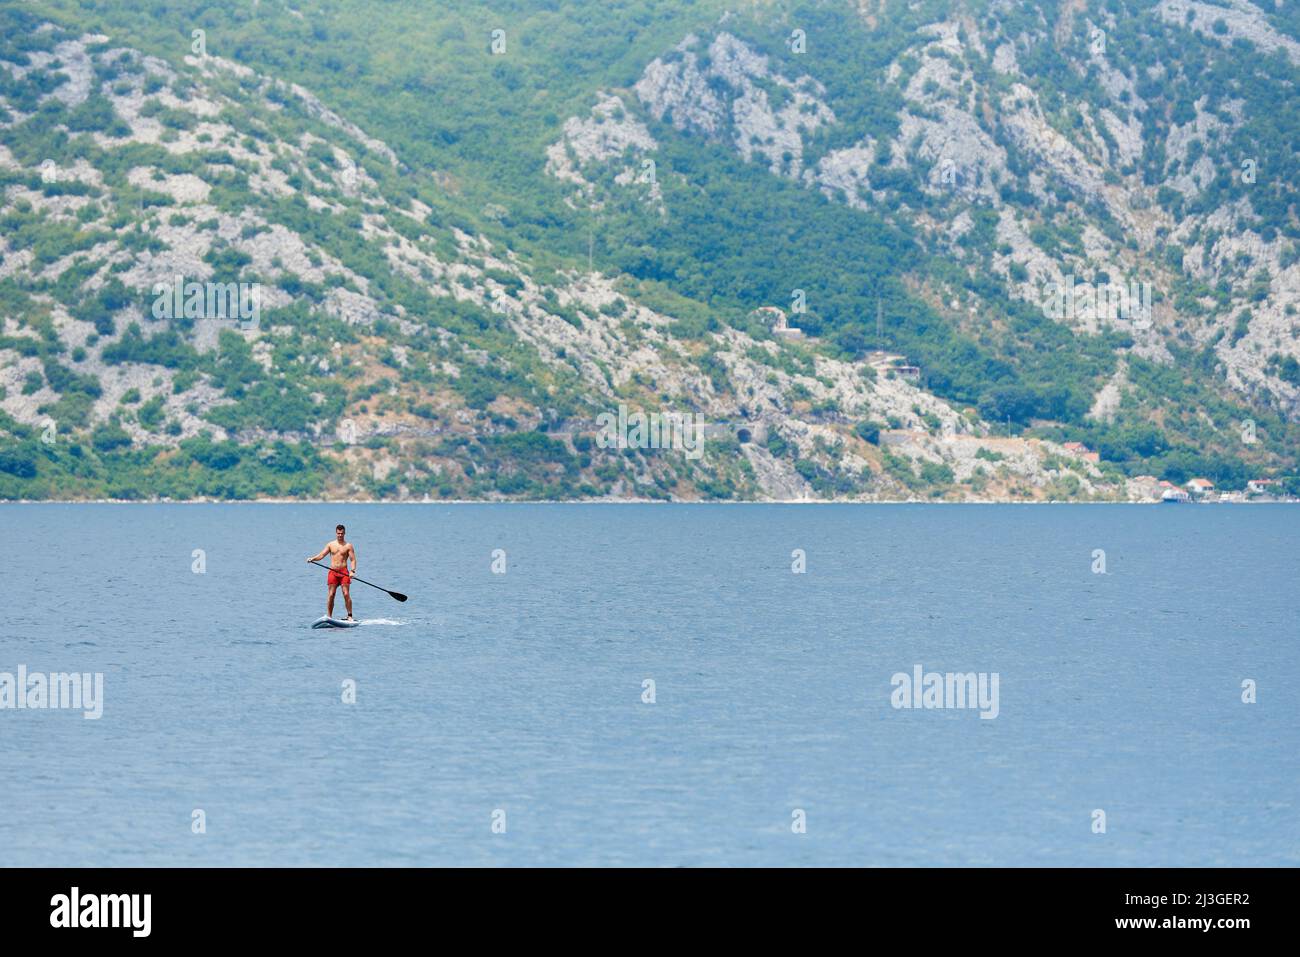 PERAST, MONTENEGRO - 20. JULI 2021: Junger Mann fährt auf einem Paddelbrett im Meer Stockfoto